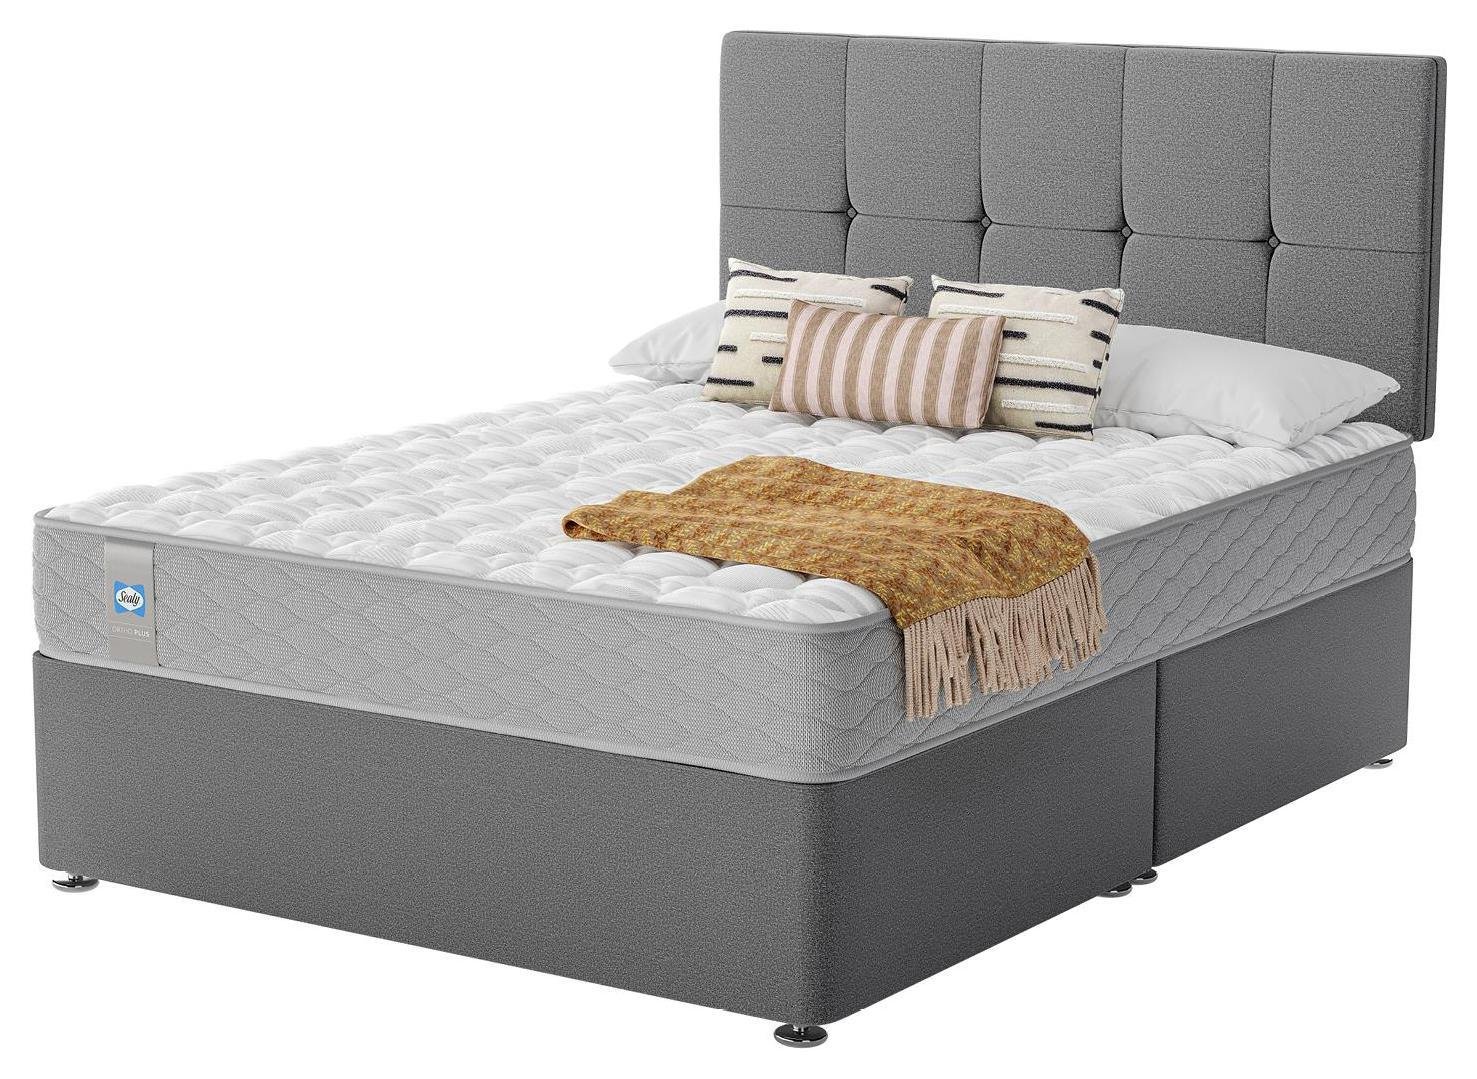 Sealy Eldon Comfort Kingsize Divan Bed - Grey